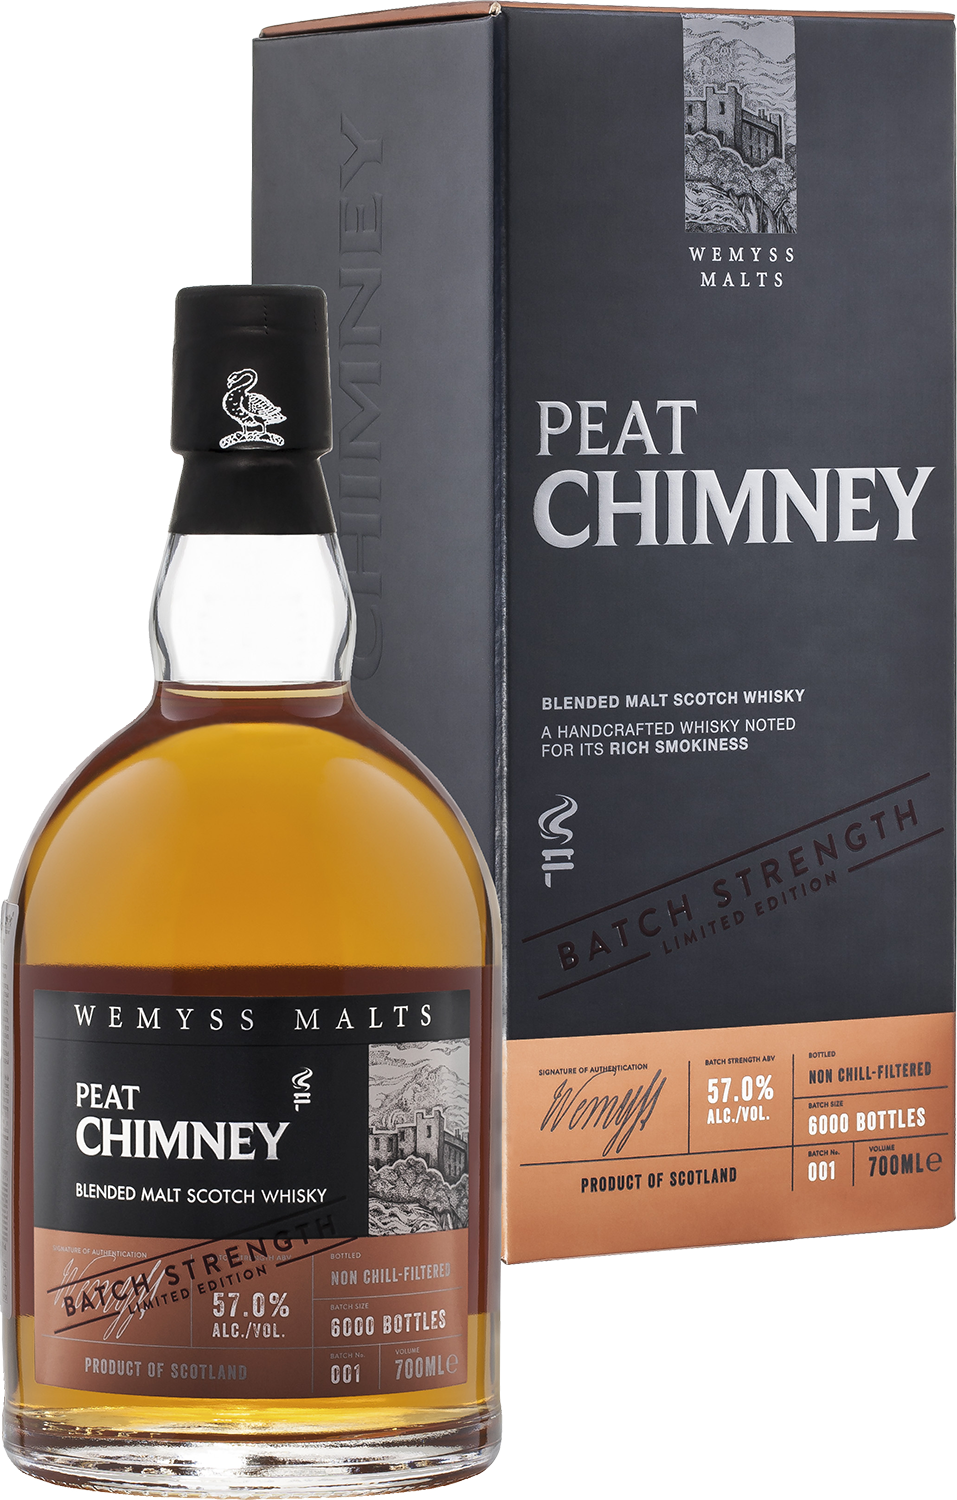 Peat Chimney Batch Strength Wemyss Malts blended malt scotch whisky the hive batch strength wemyss malts blended malt scotch whisky